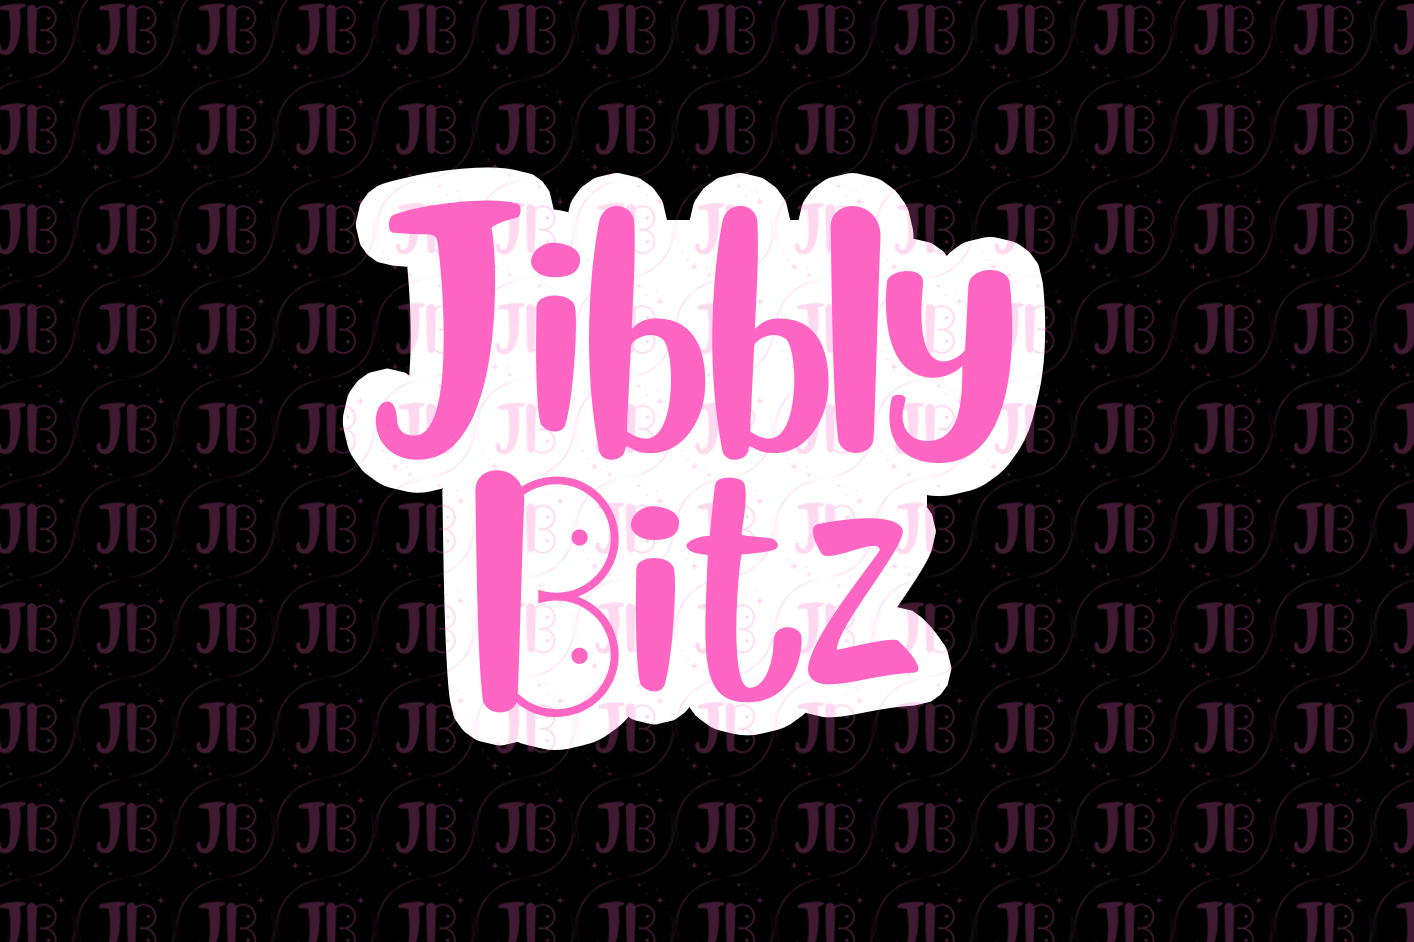 JibblyBitz Square Logo JibblyBitz